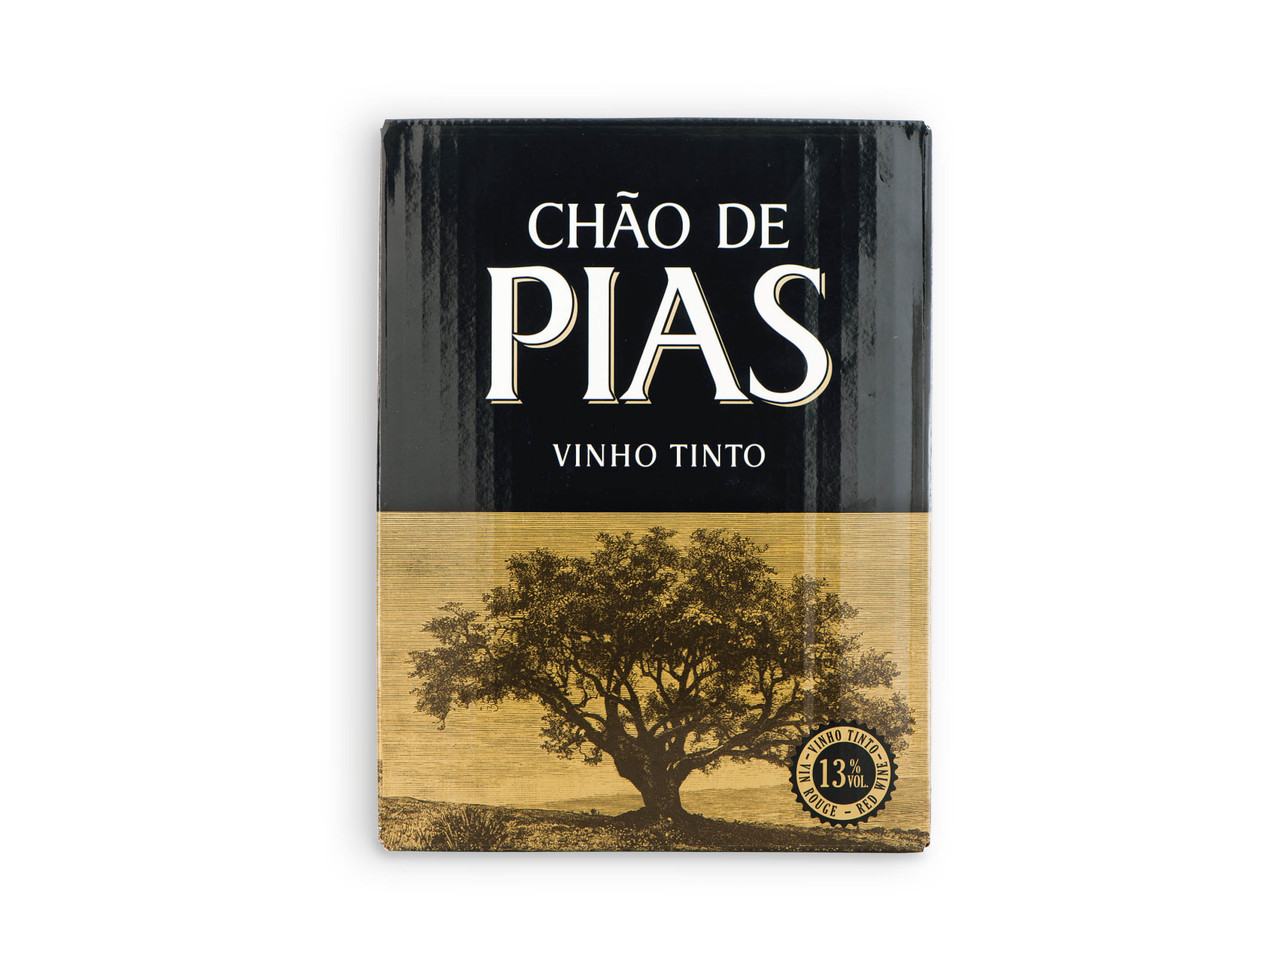 CHÃO DE PIAS(R) Vinho Tinto